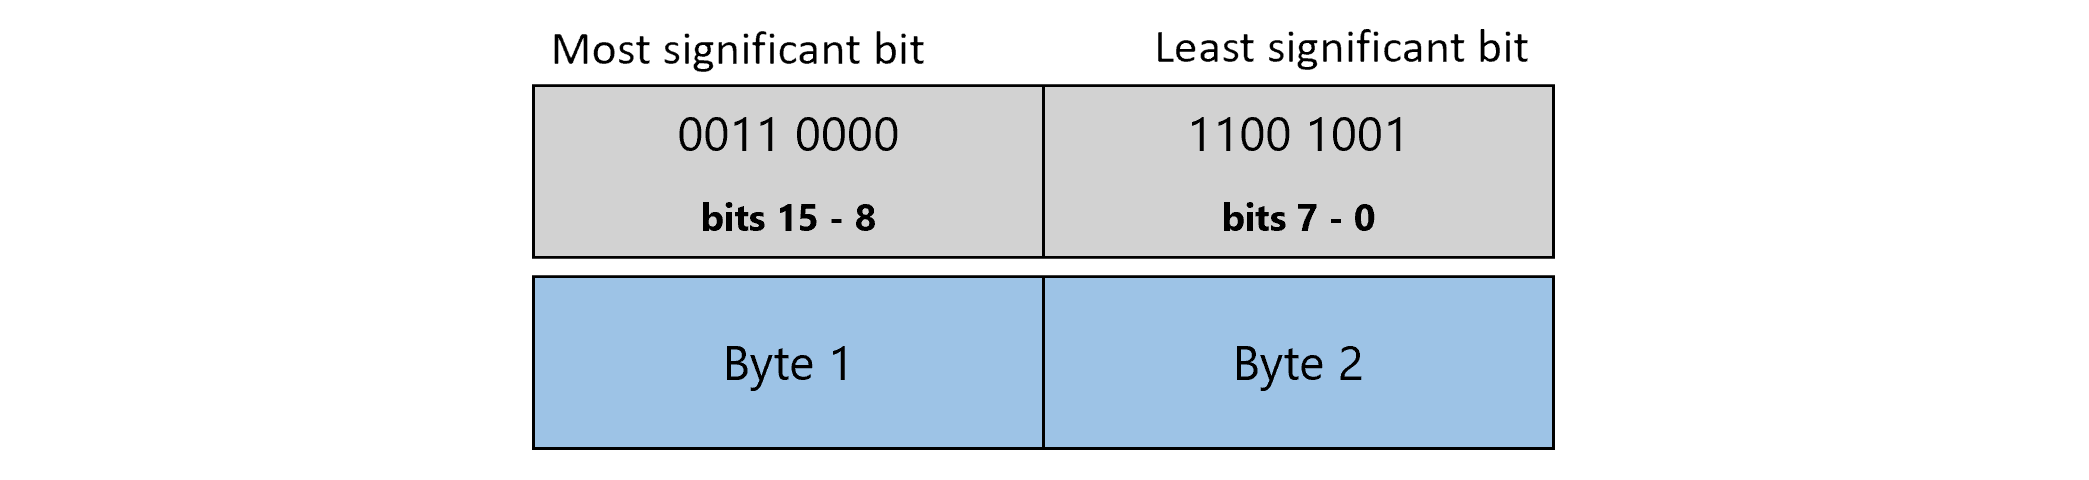 Diagramme affichant une faible valeur int lorsque le premier octet représente des bits de 15 à 8 et le second octet représente des bits de 7 à 0.